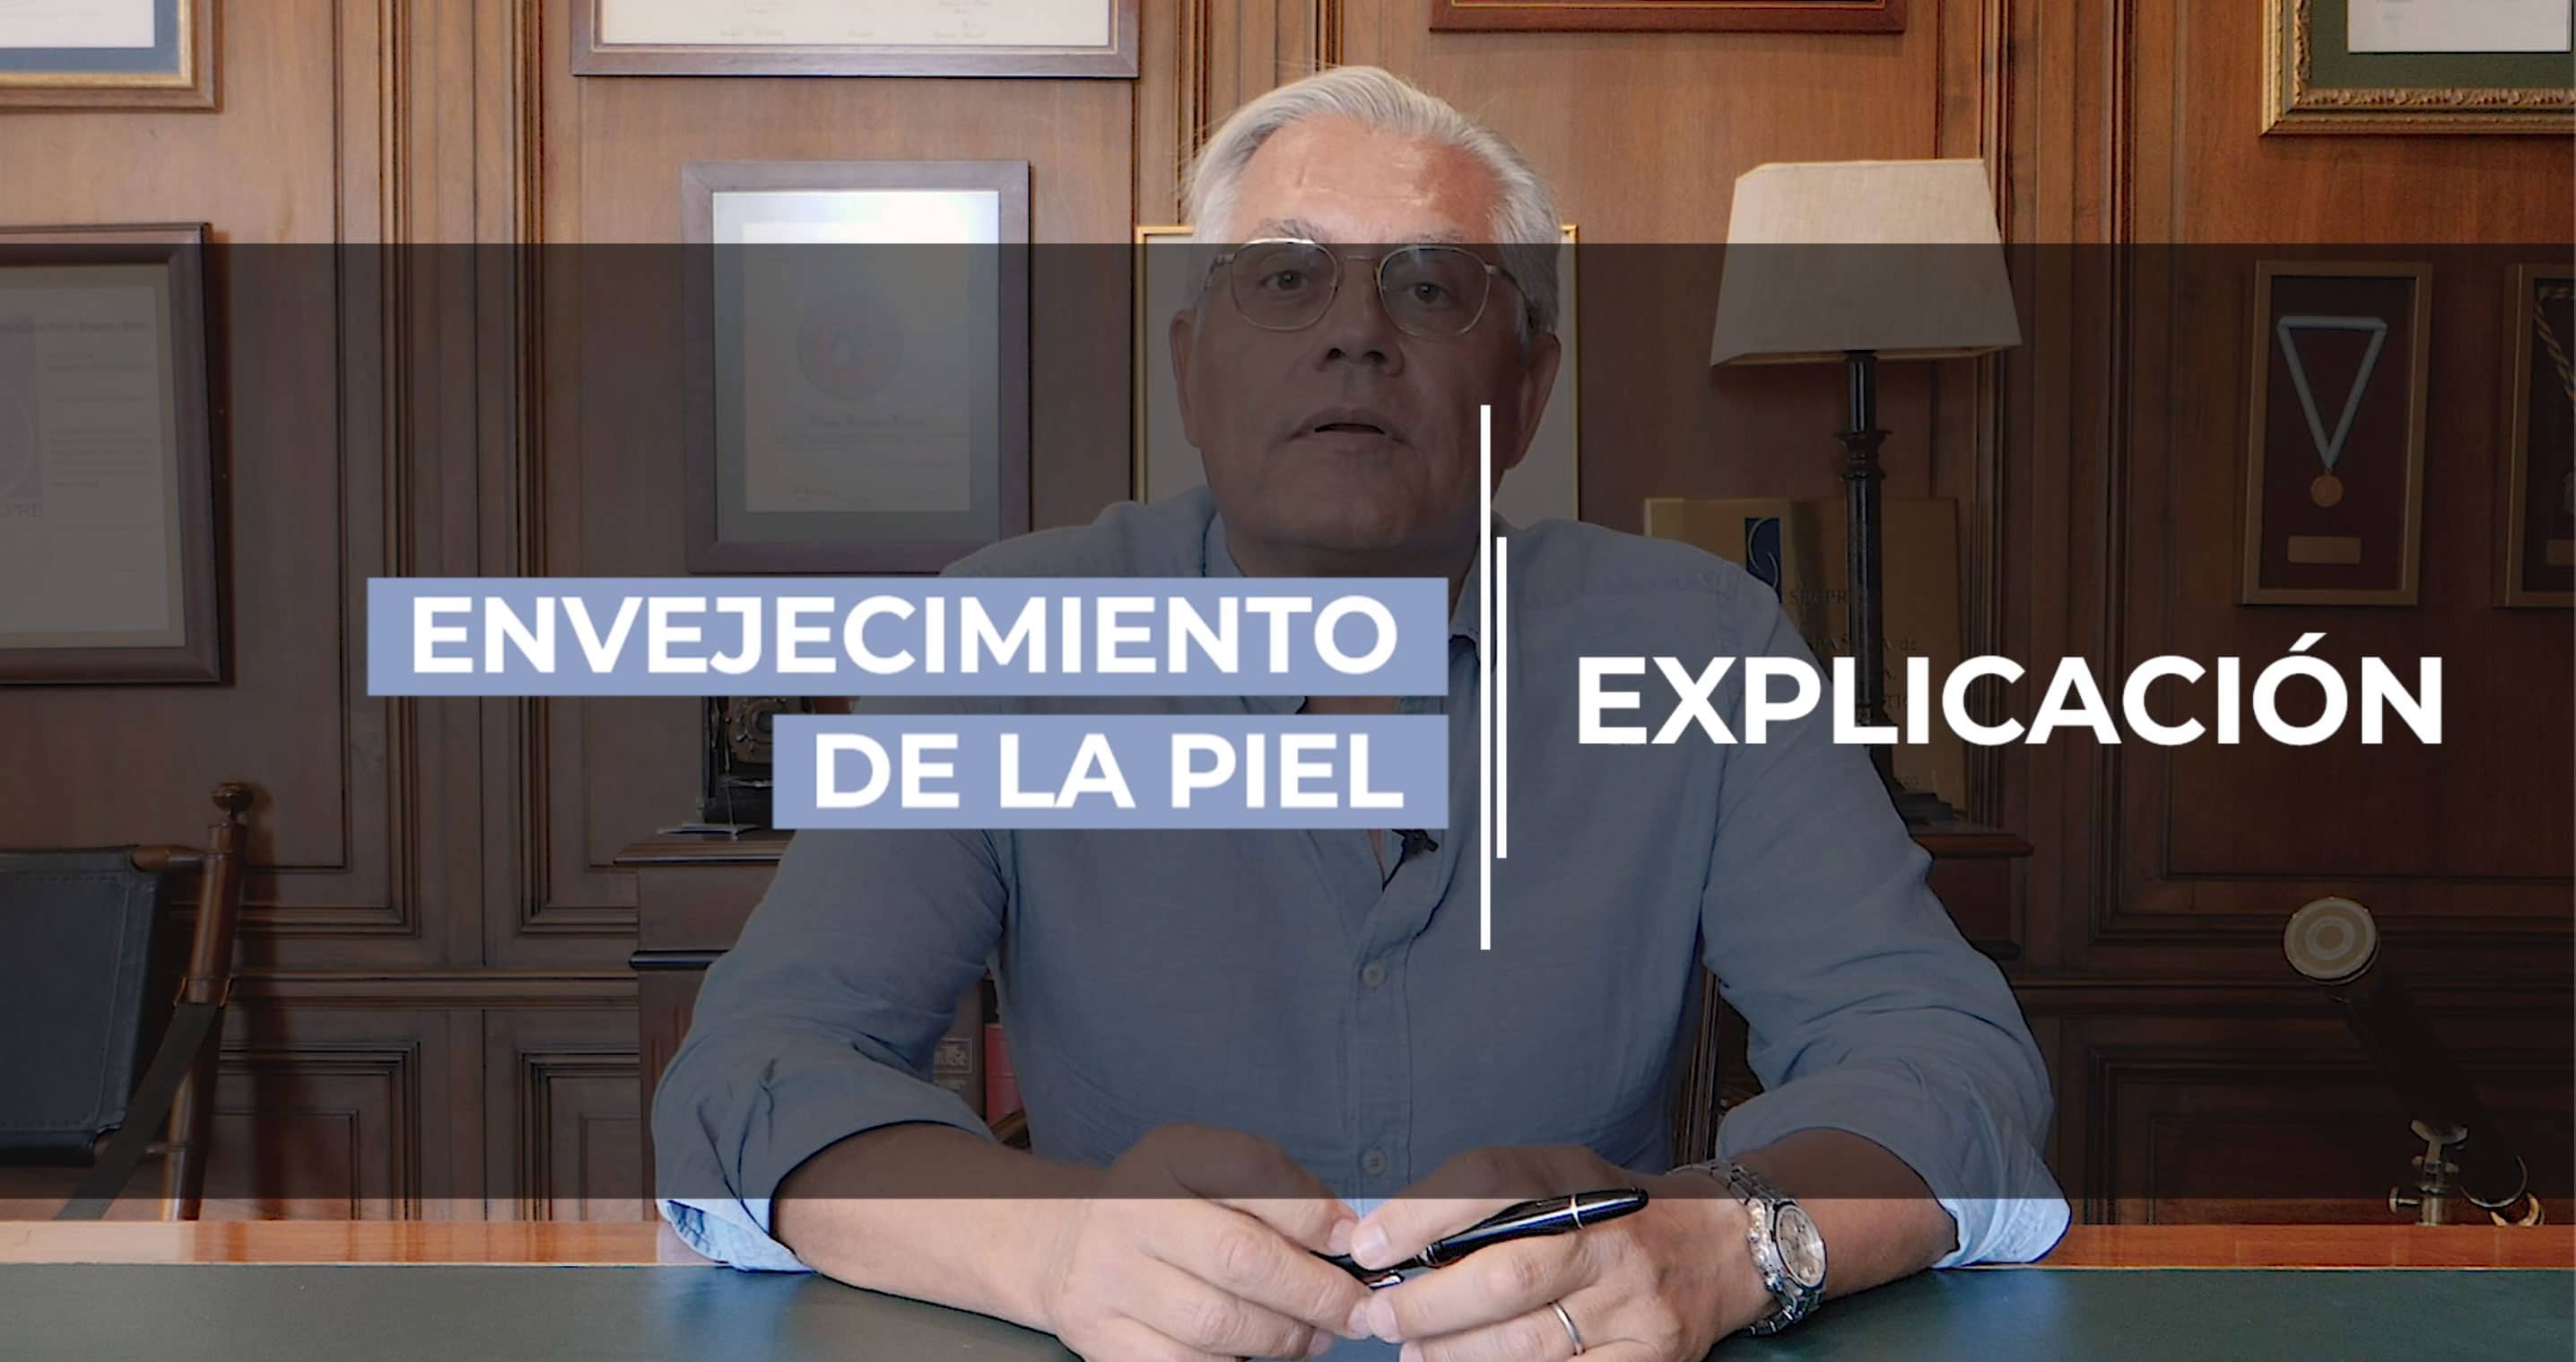 Videoblog del Dr. Fernández Blanco acerca del envejecimiento de la piel